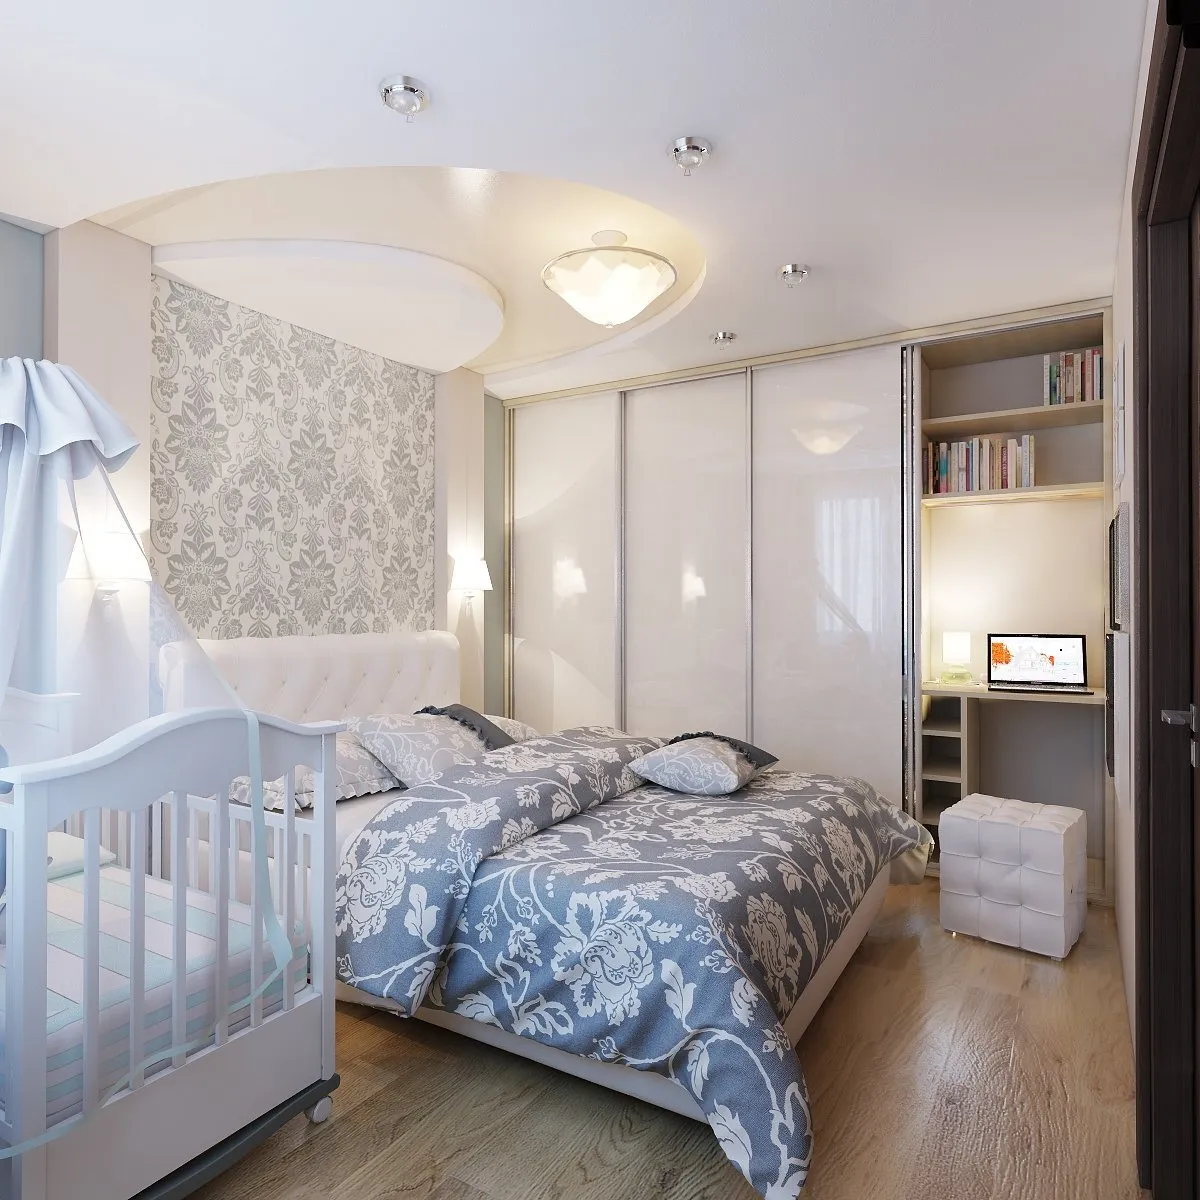 Планировка комнаты с детской кроваткой (63 фото)